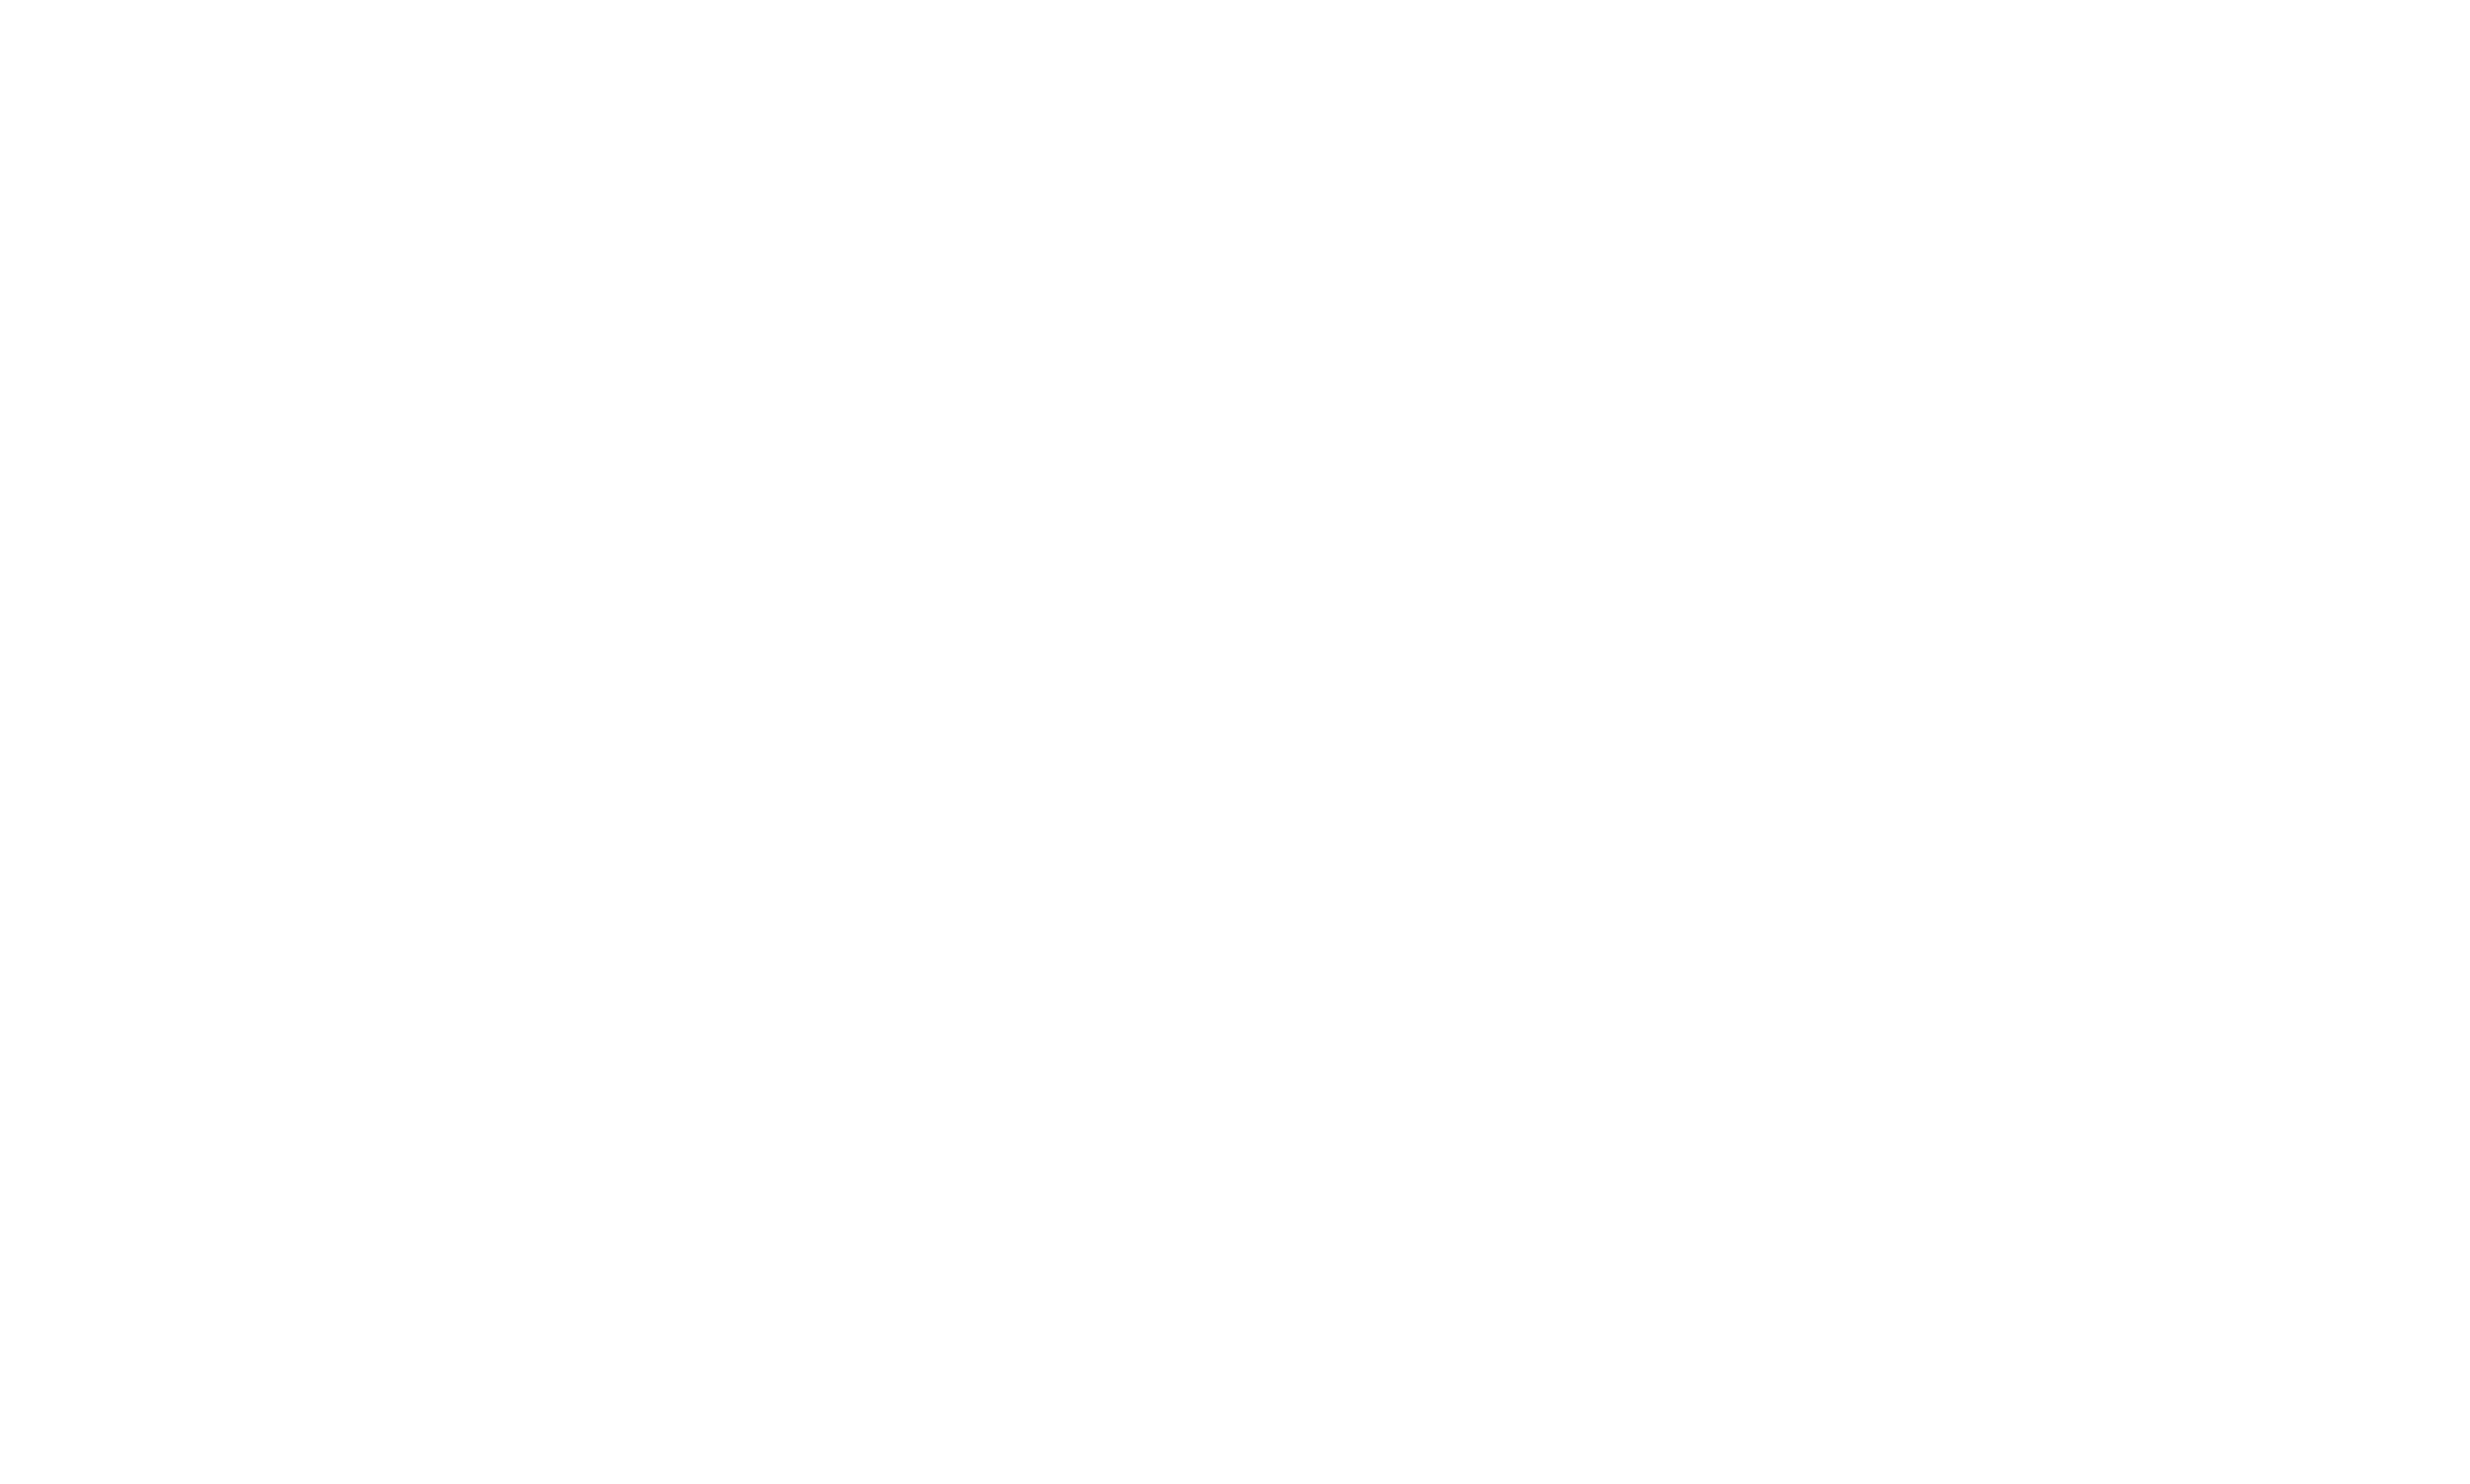 The Milestone Group